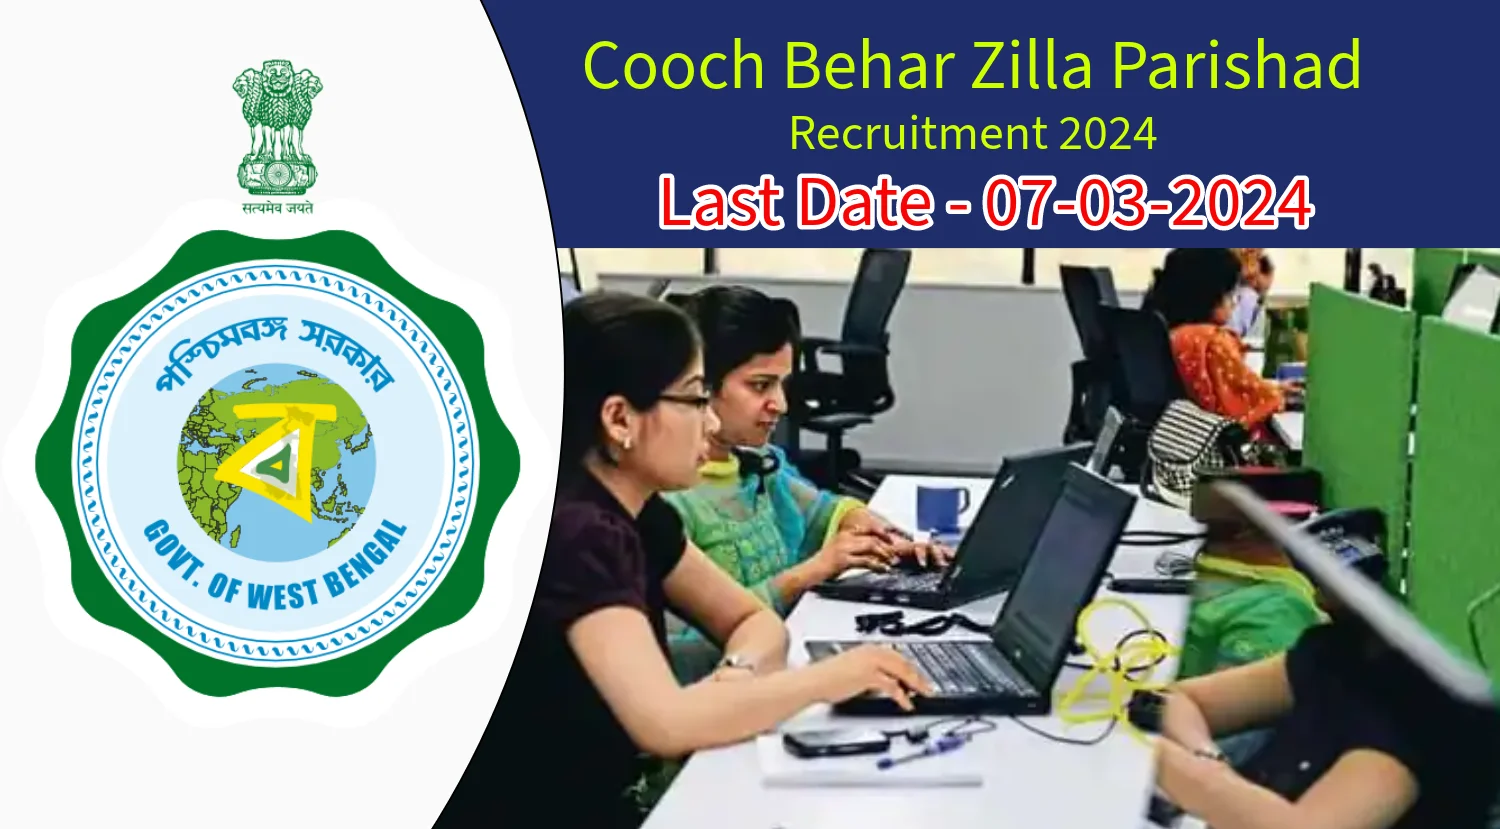 Cooch Behar Zilla Parishad Recruitment 2024 for Various Posts